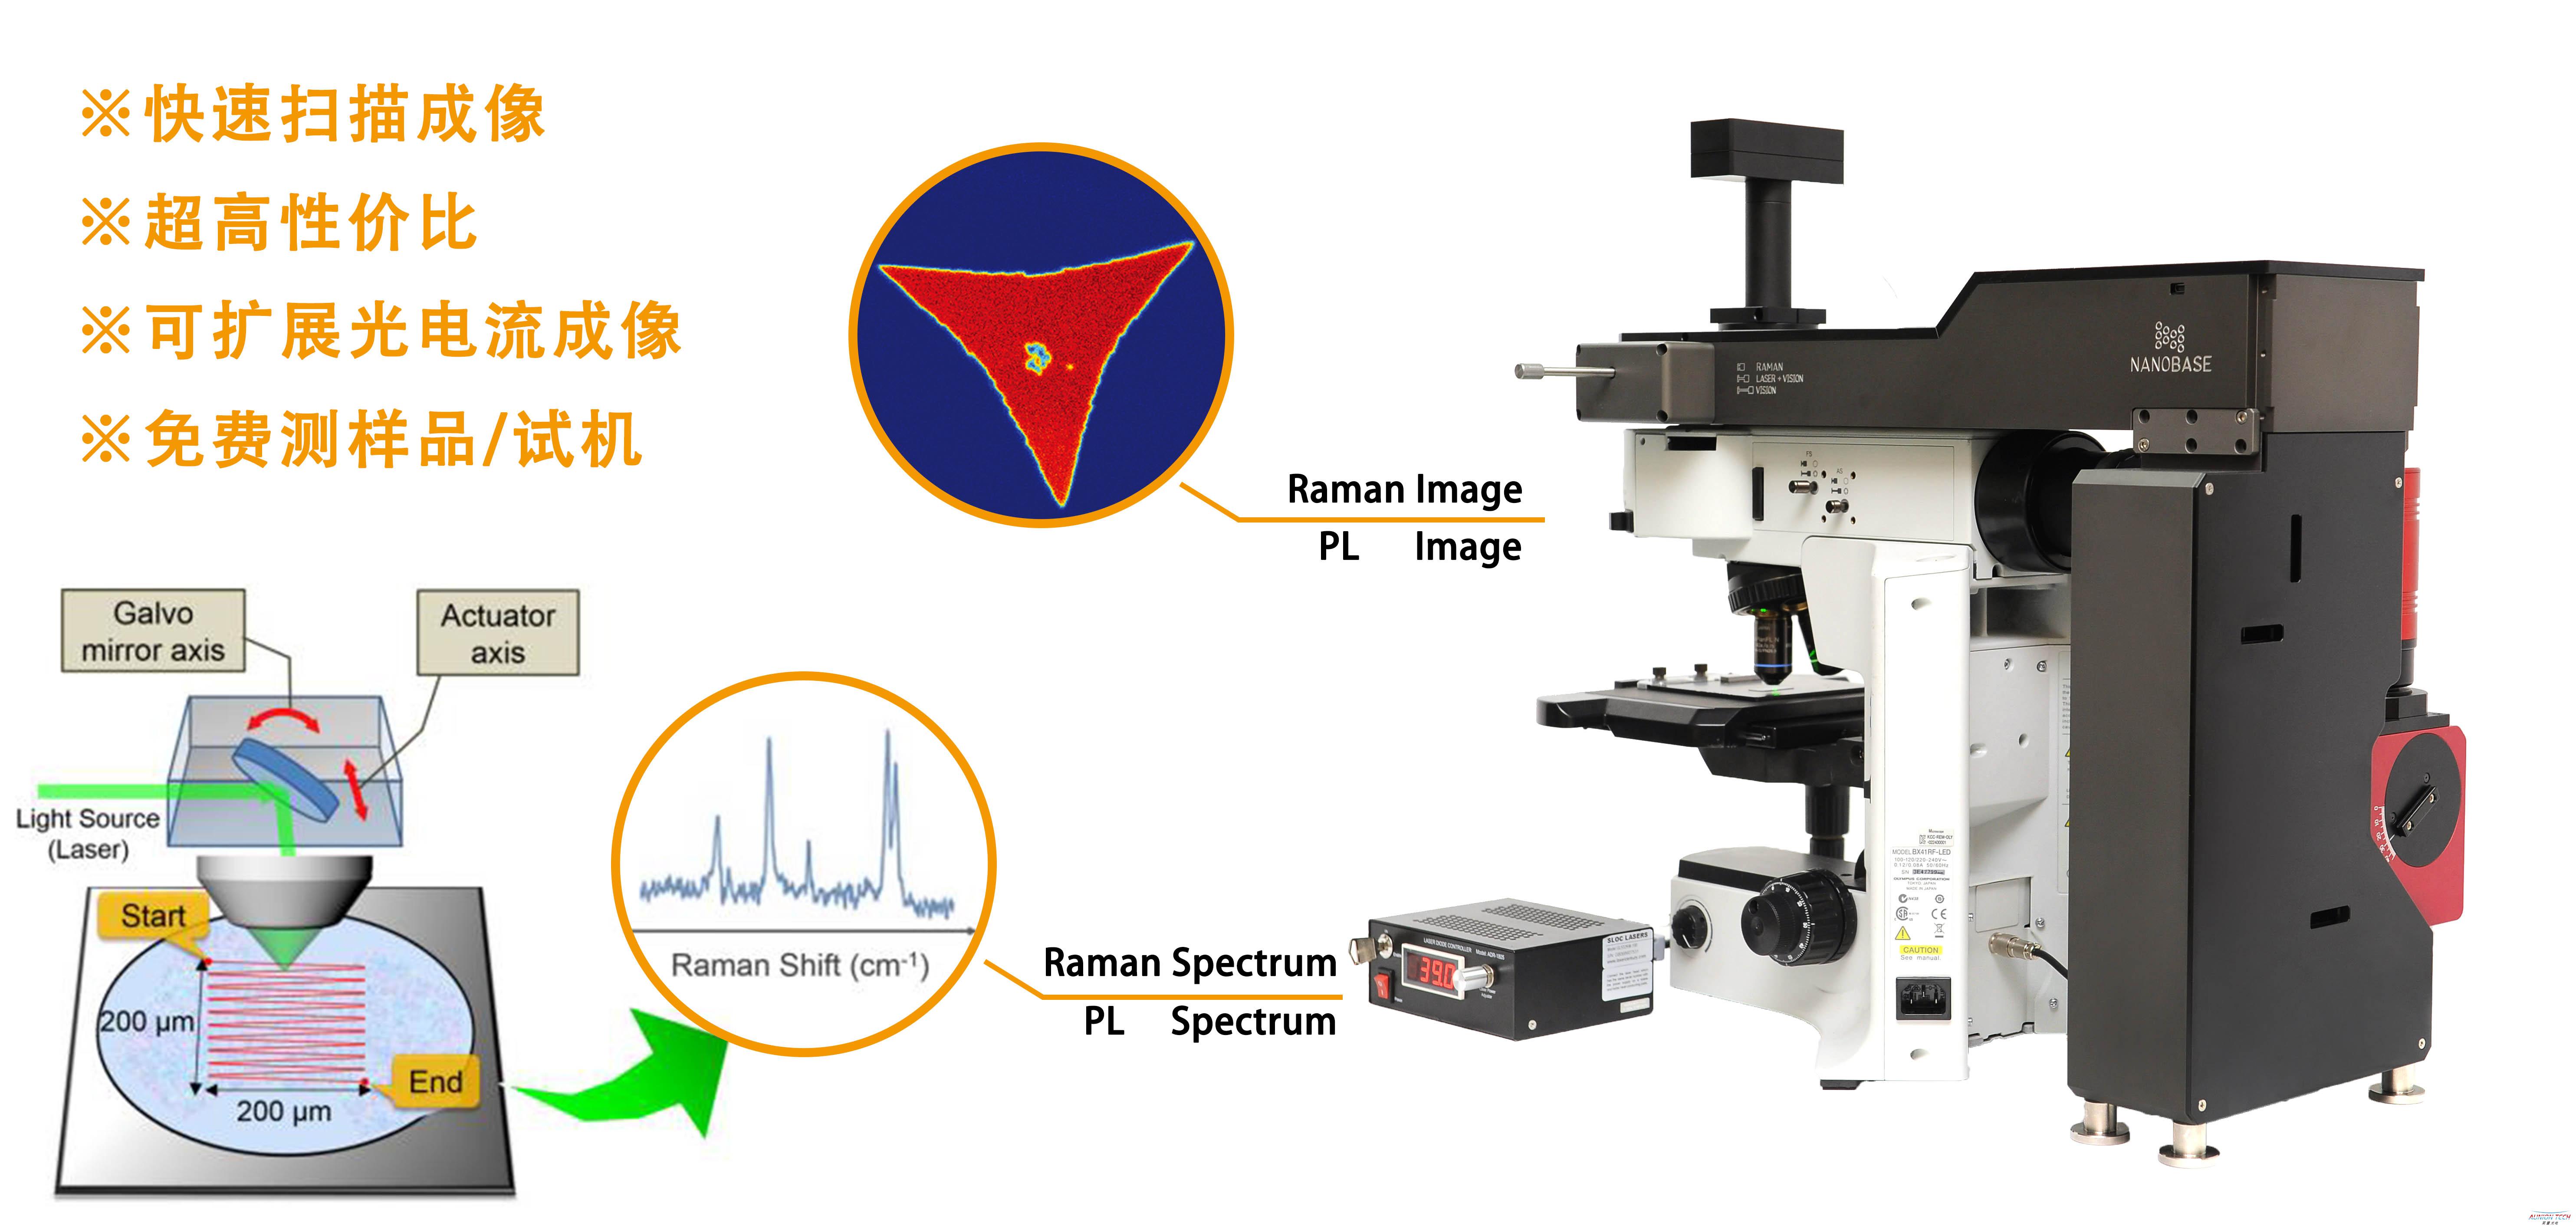 单分子表面增强拉曼散射的光谱特性及分析方法 - 中科院物理研究所 - Free考研考试